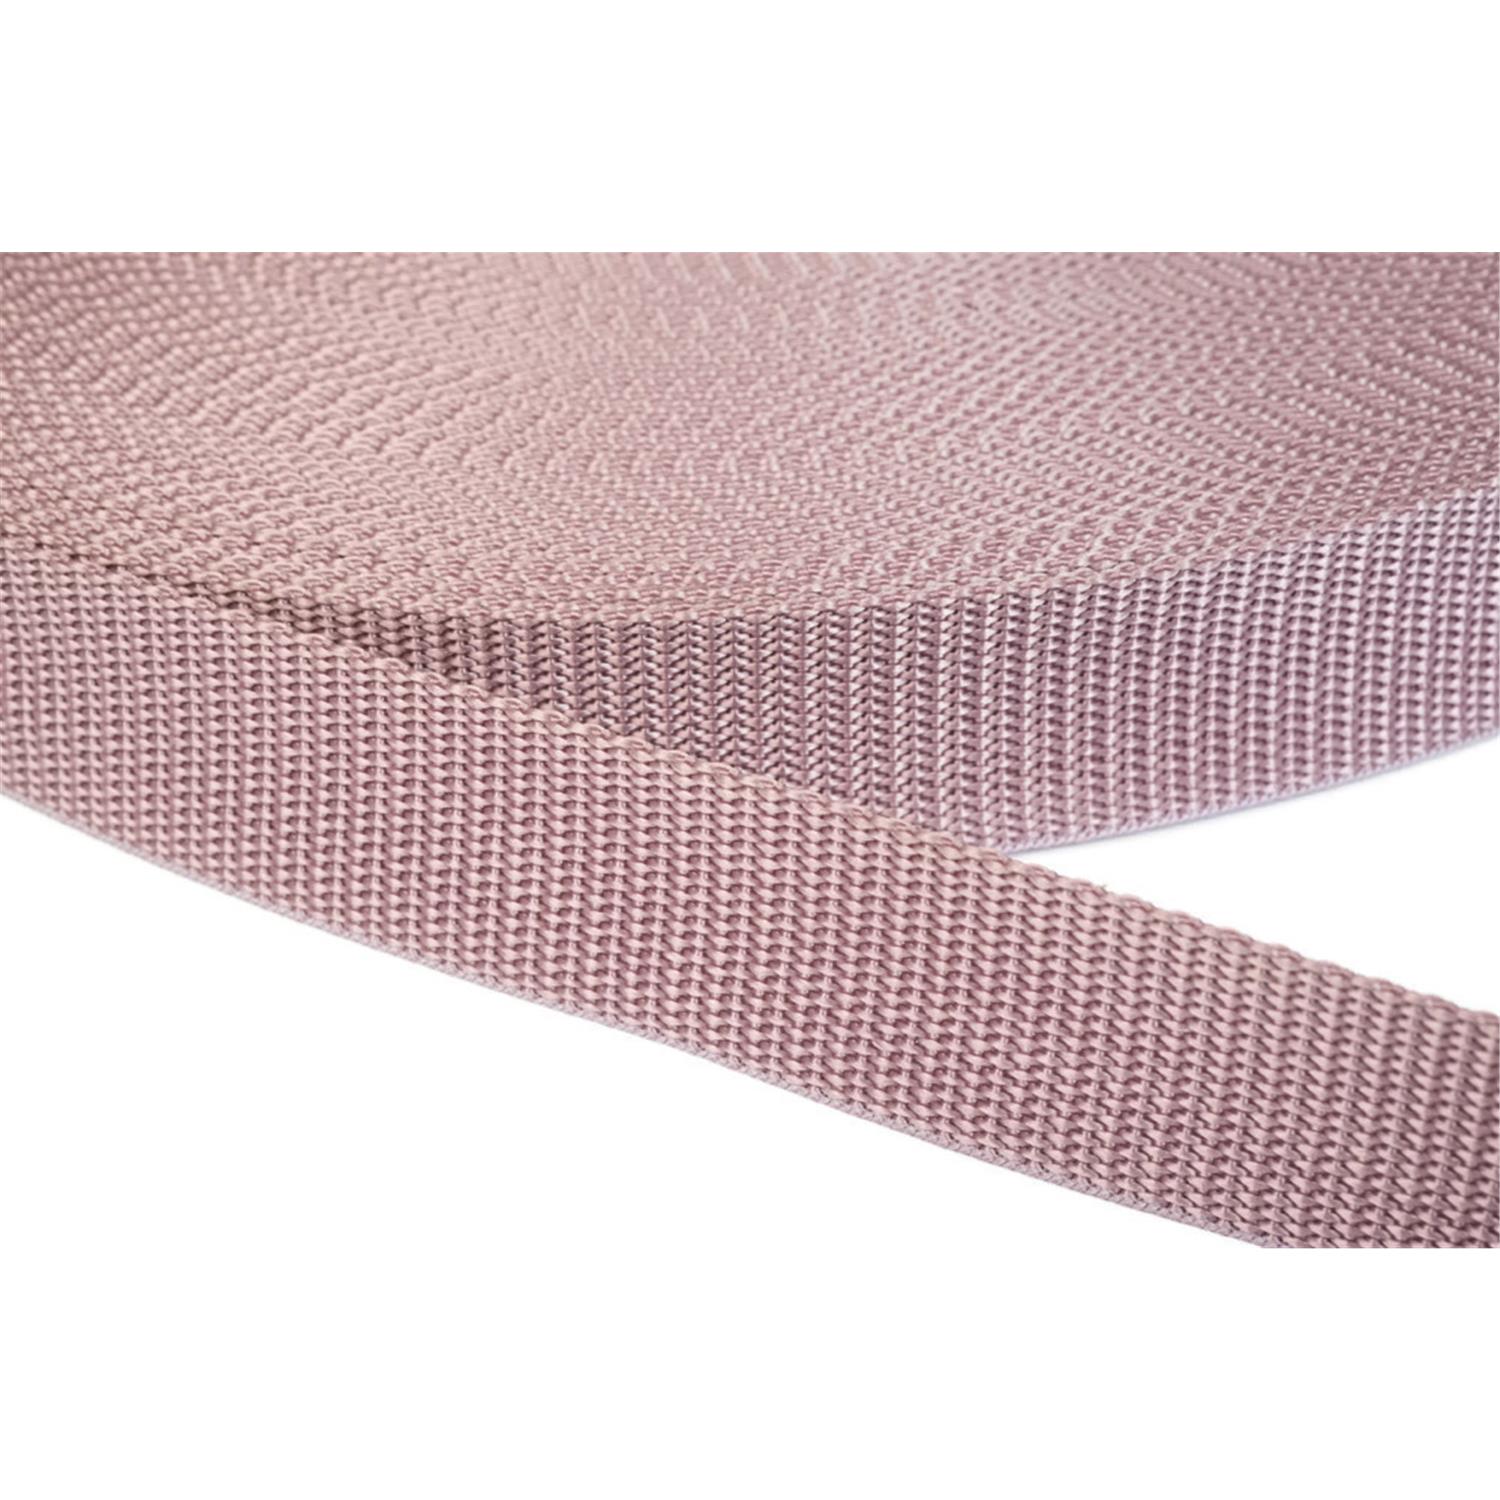 Gurtband 20mm breit aus Polypropylen in 41 Farben 15 - altrosa 12 Meter